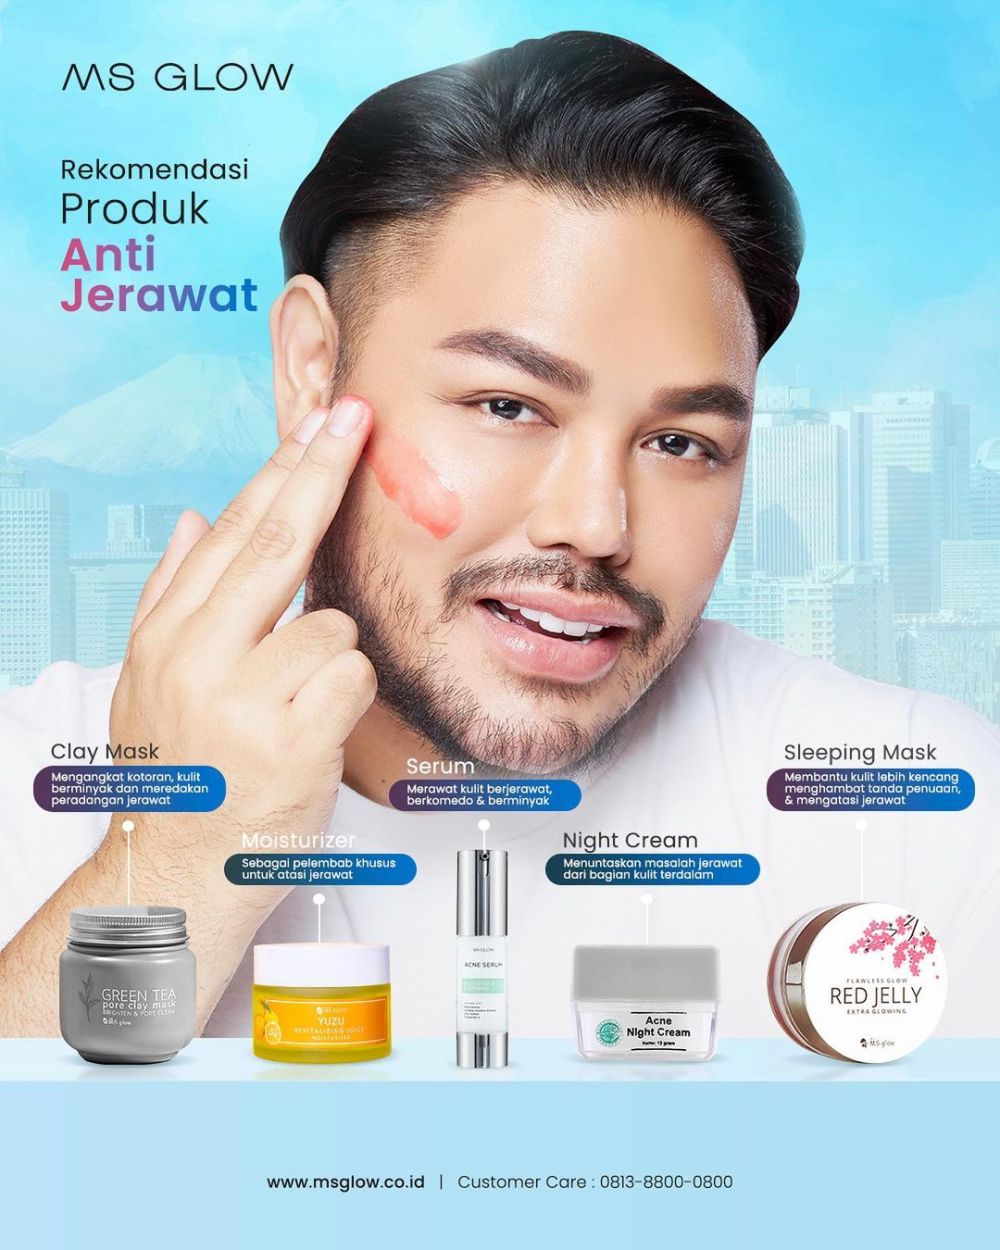 10 Selebritas Pria Indonesia Jadi Brand Ambassador Produk Kecantikan